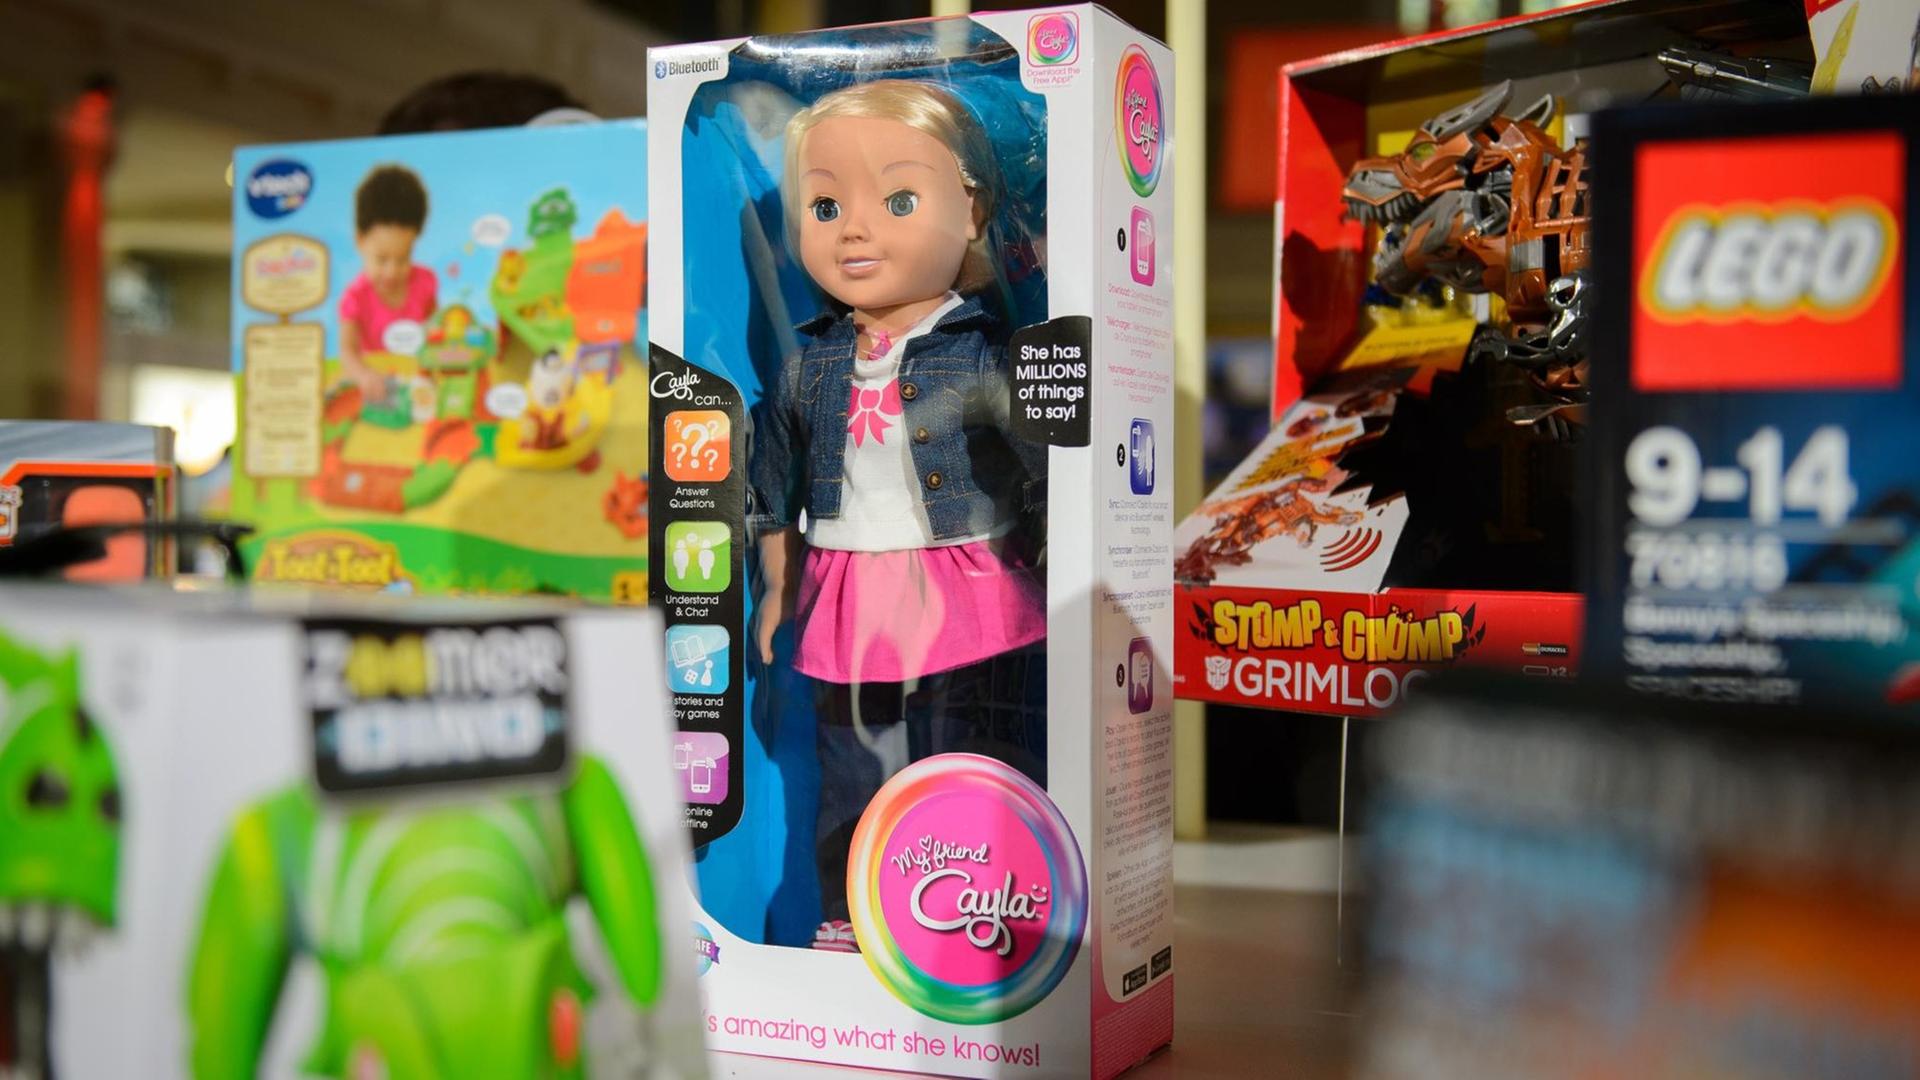 Die sprechende Puppe "My Friend Cayla" steht zwischen anderen Spielzeugen. Die Bundesnetzagentur hat so eine Puppe verboten, weil es sich dabei um eine versteckte Sendeanlage handeln würde.